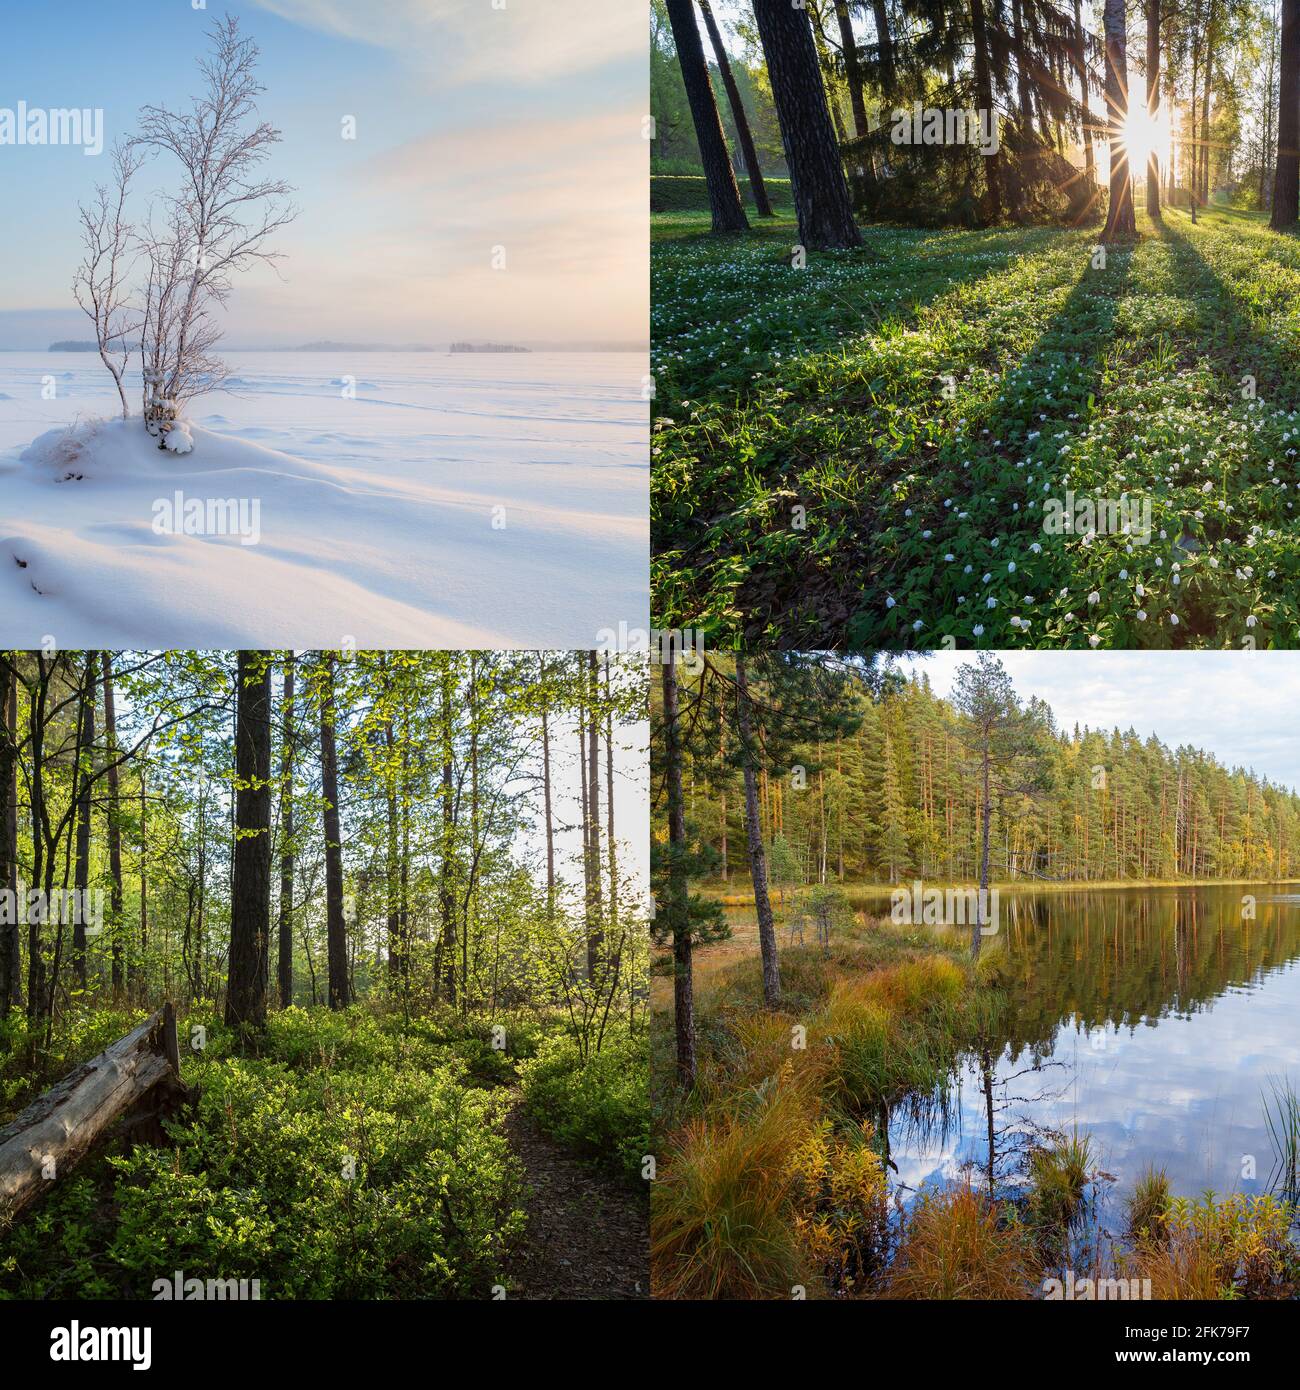 Vier Jahreszeiten in Finnland - Winter, Frühling, Sommer und Herbst. Schöne Landschaften in der Natur. Stockfoto